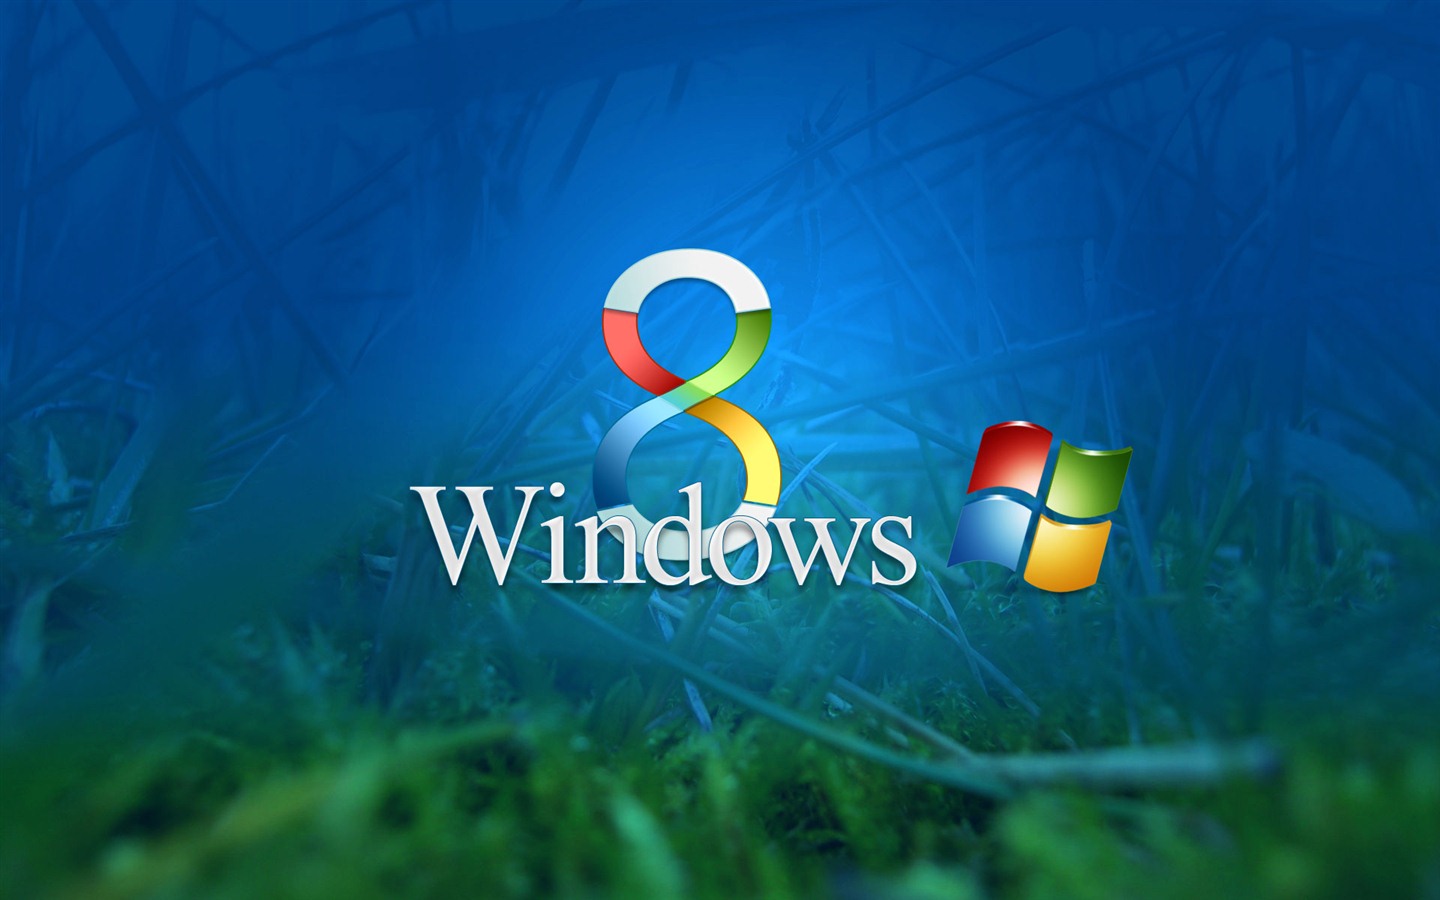 Windows 8 Theme Wallpaper (2) #1 - 1440x900